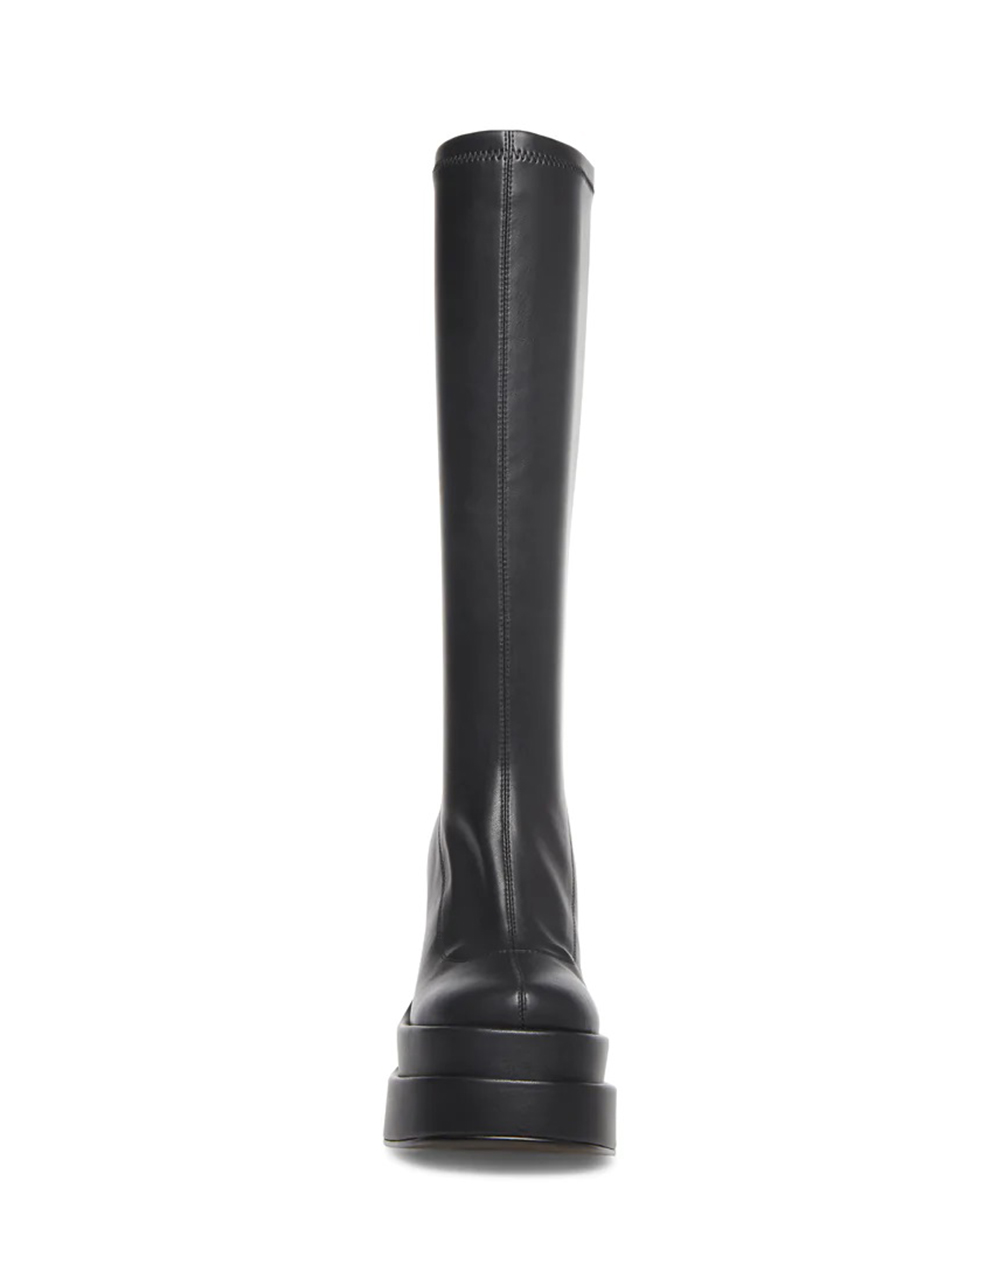 STEVE MADDEN Cypress Womens Boots - BLACK | Tillys